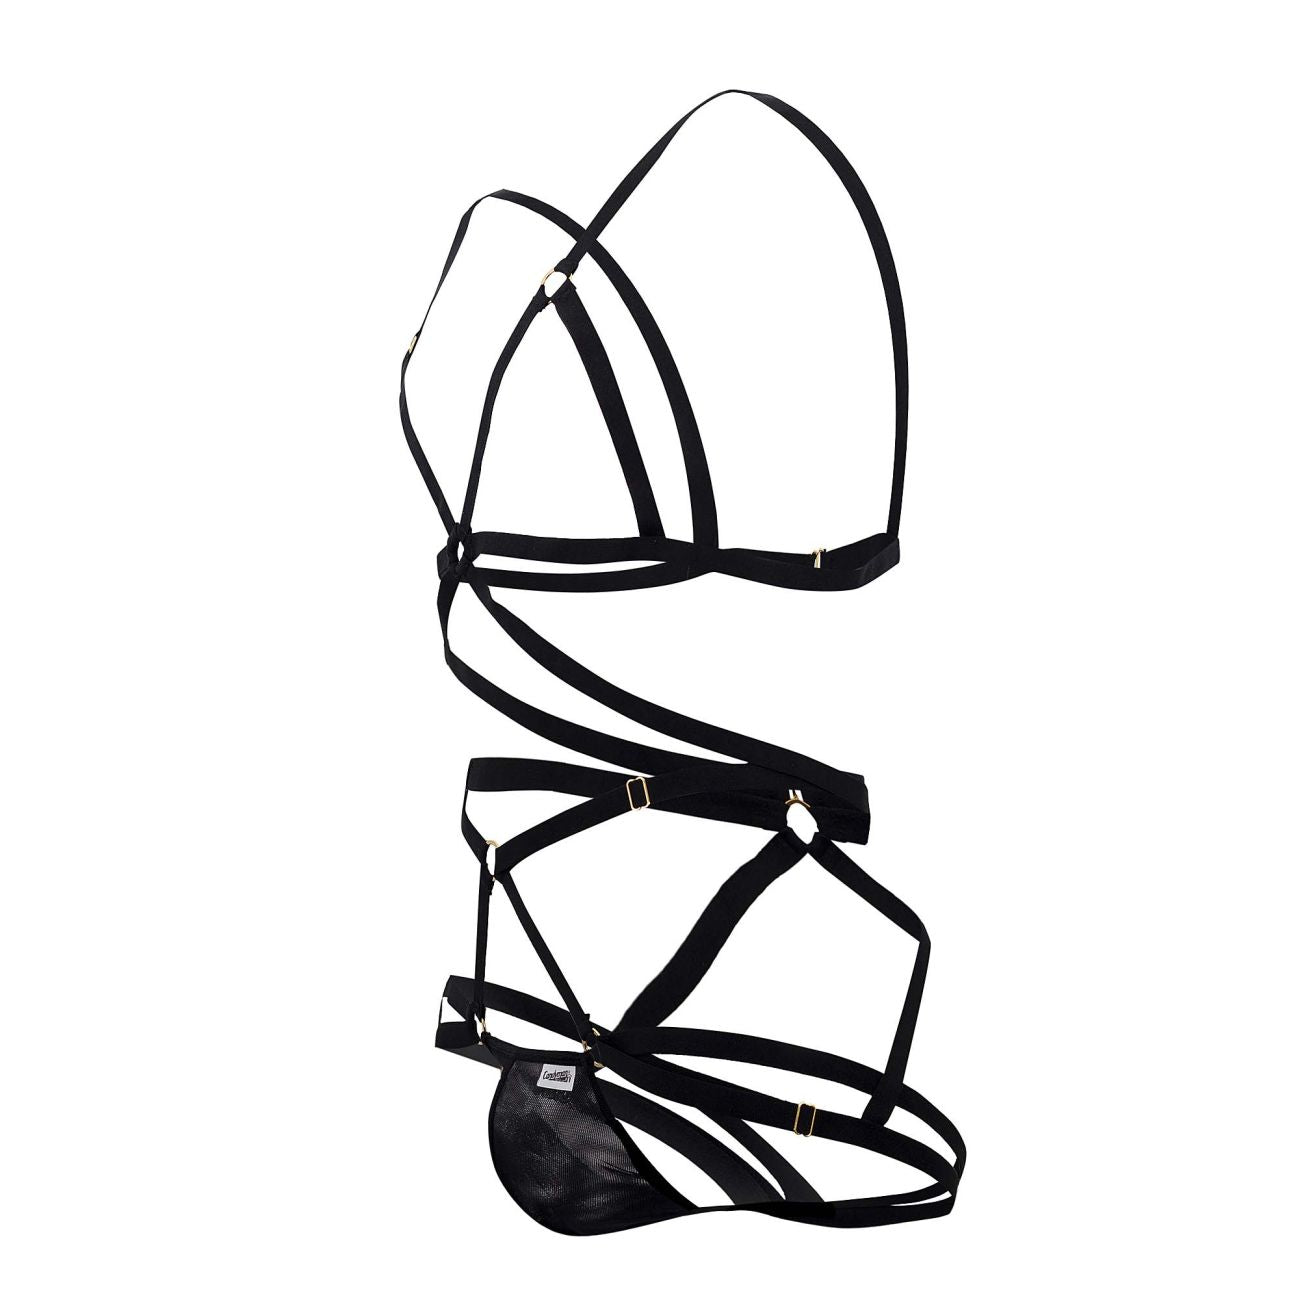 JCSTK - CandyMan 99635 Strappy Harness Set Black